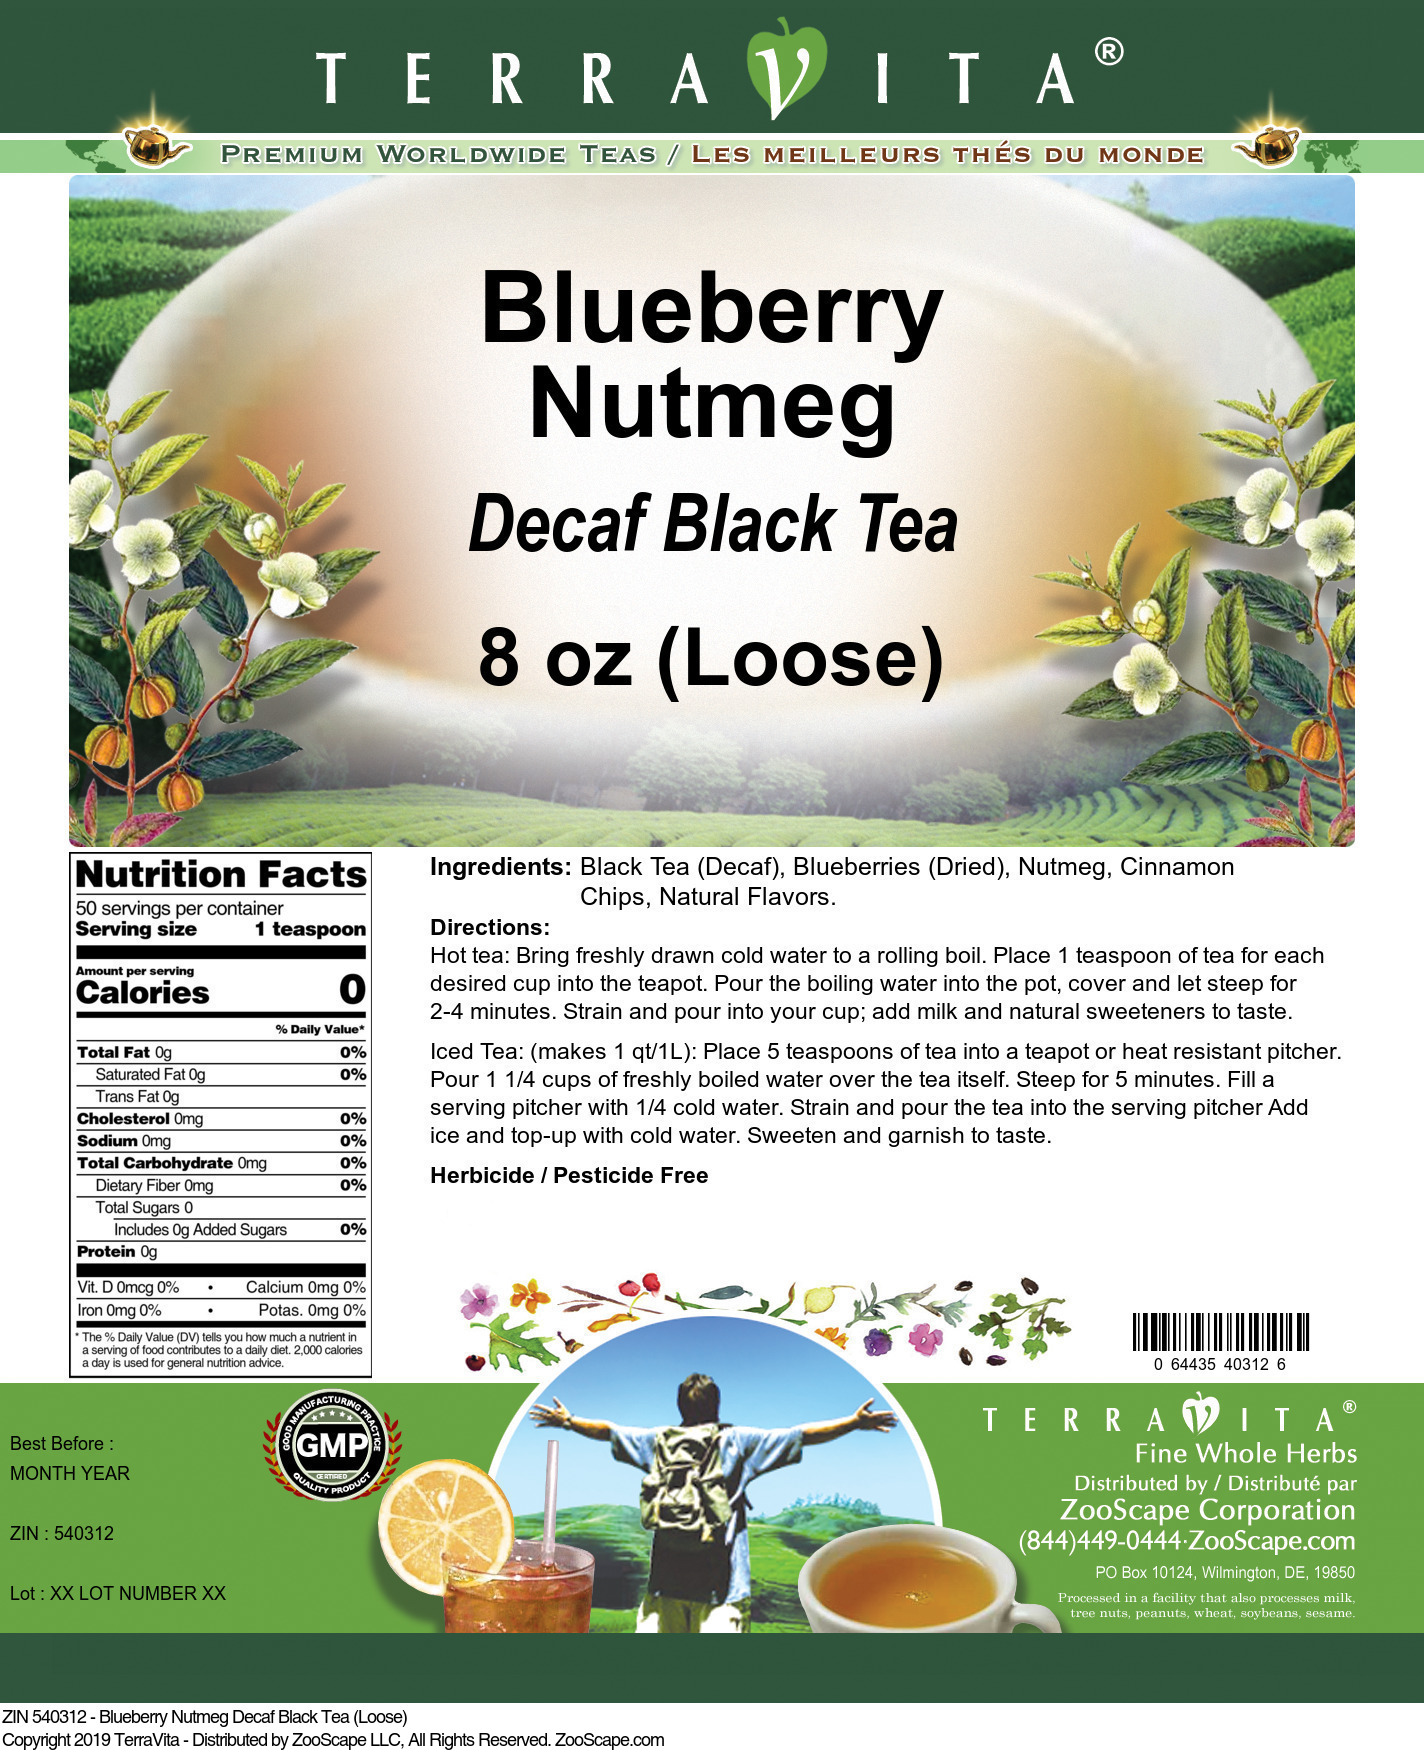 Blueberry Nutmeg Decaf Black Tea (Loose) - Label